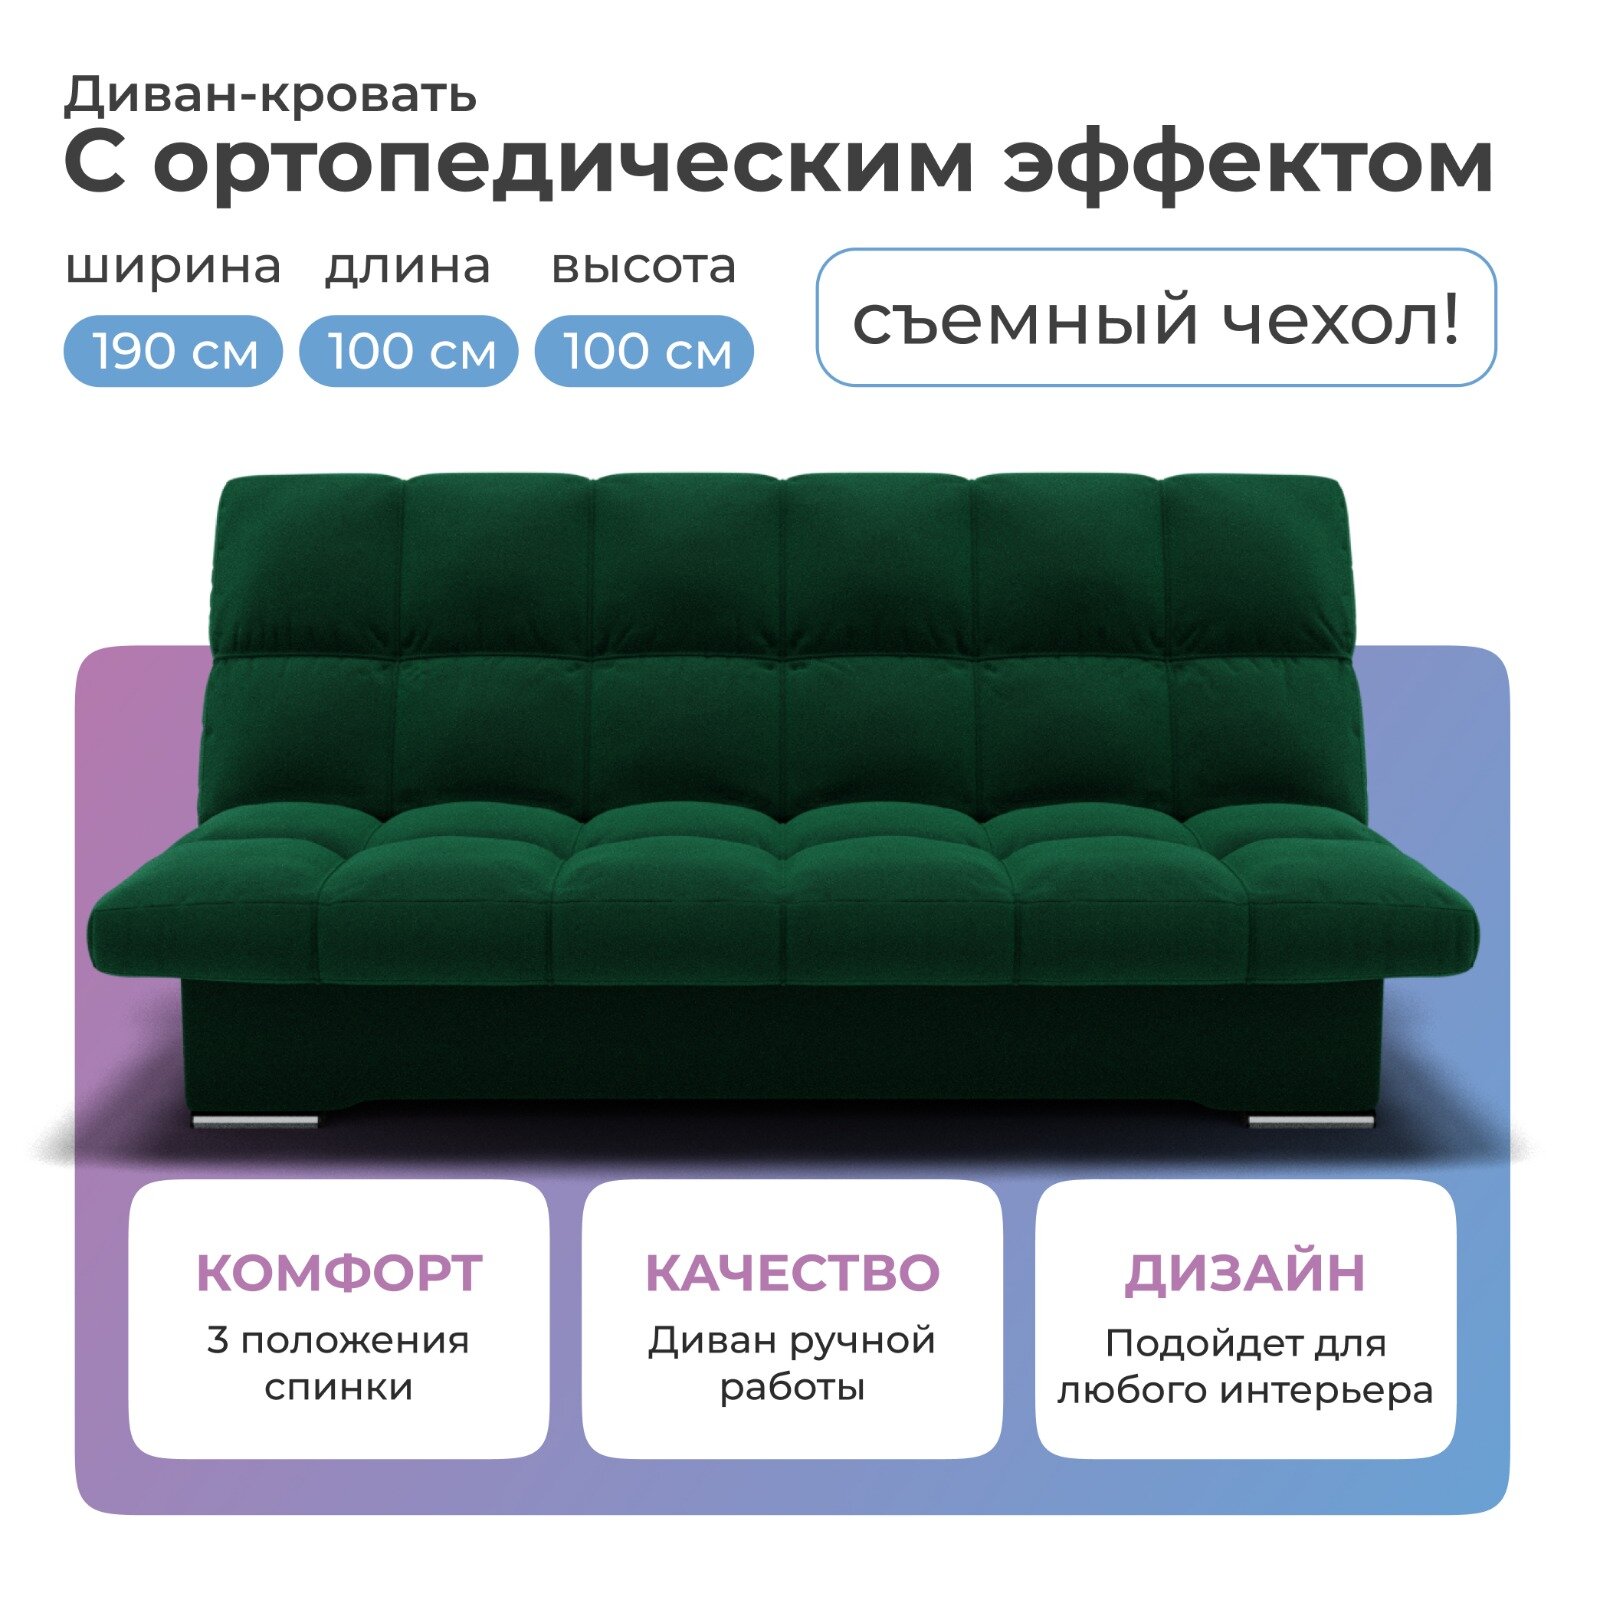 Диван-кровать Финка изумрудный цвета 190х100 см